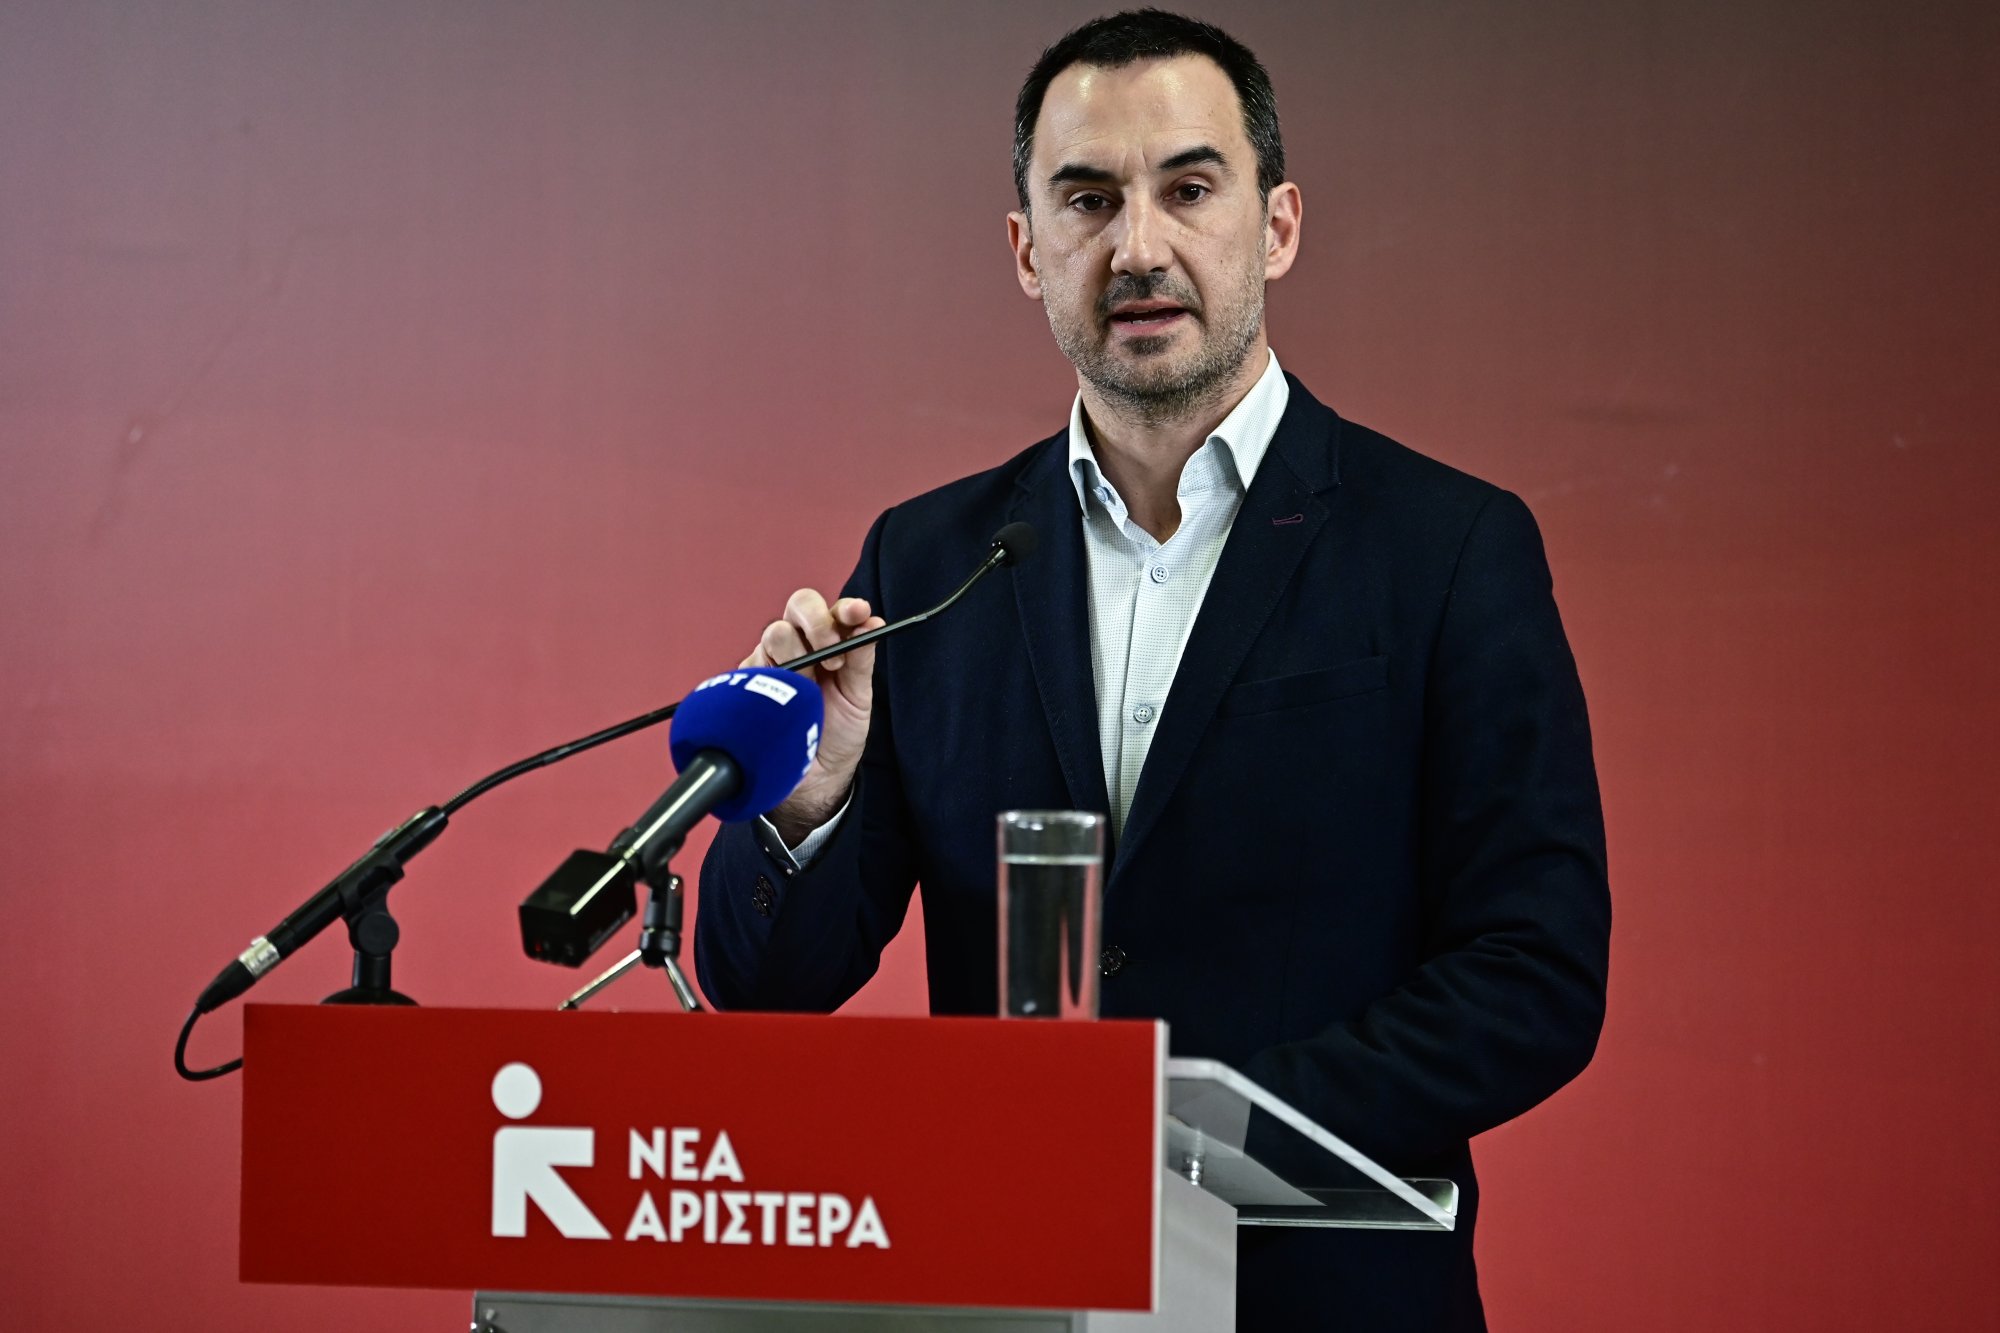 Χαρίτσης προς ΣΥΡΙΖΑ και ΠΑΣΟΚ - «Τους καλώ να καταψηφίσουν επί της αρχής το νομοσχέδιο της ΝΔ»